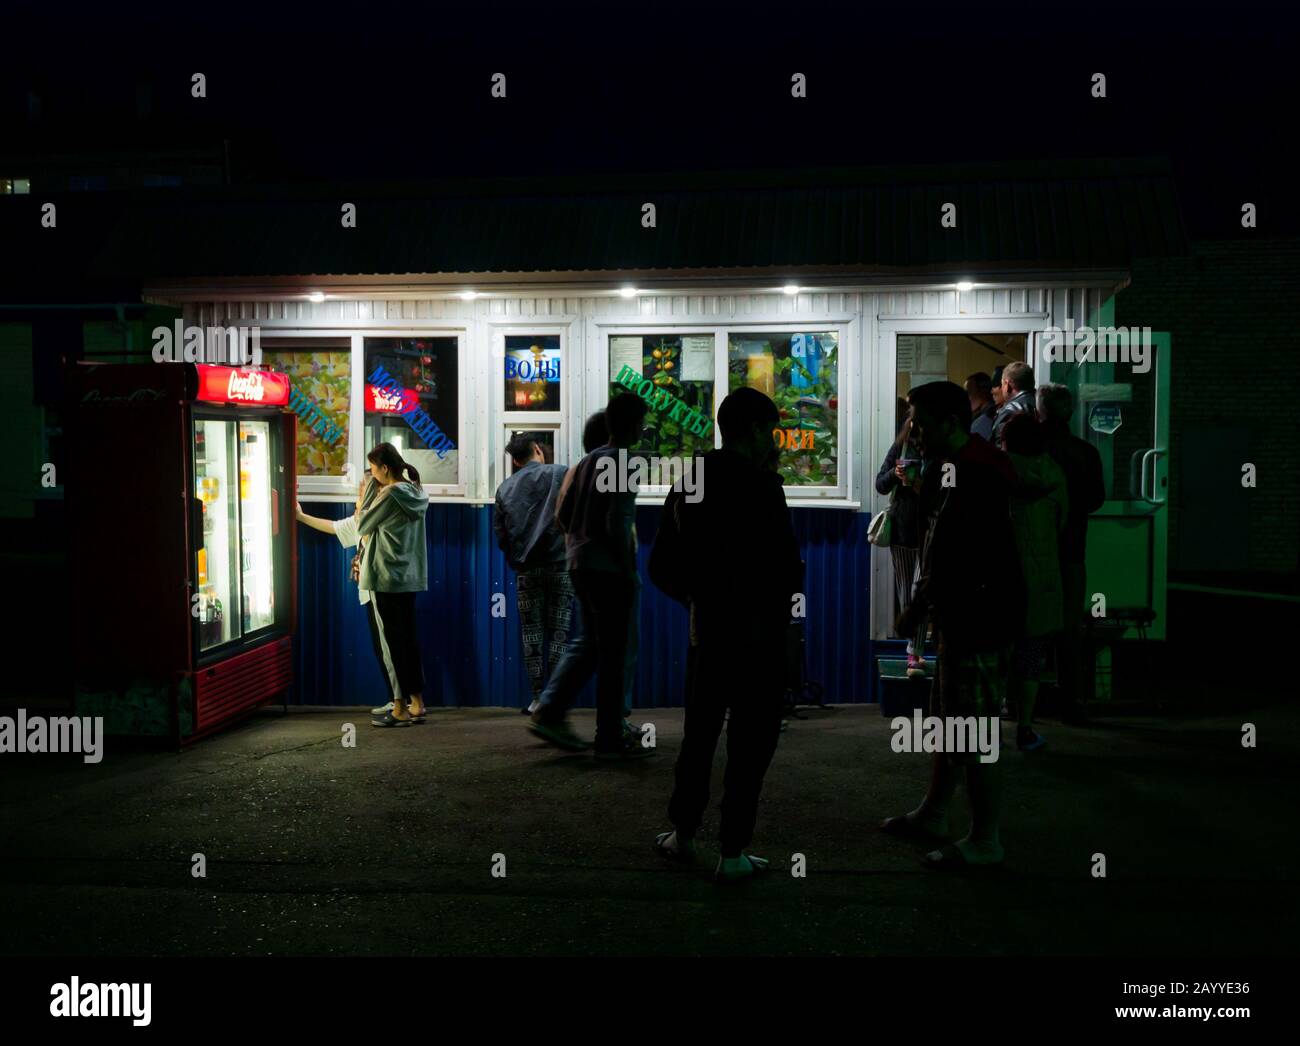 Passagiere auf Bahnsteig Food-Kiosk & Verkaufsautomaten in der Nacht, Zima Bahnhof, Transsibirische Eisenbahn-Route, Sibirien, Russische Föderation Stockfoto